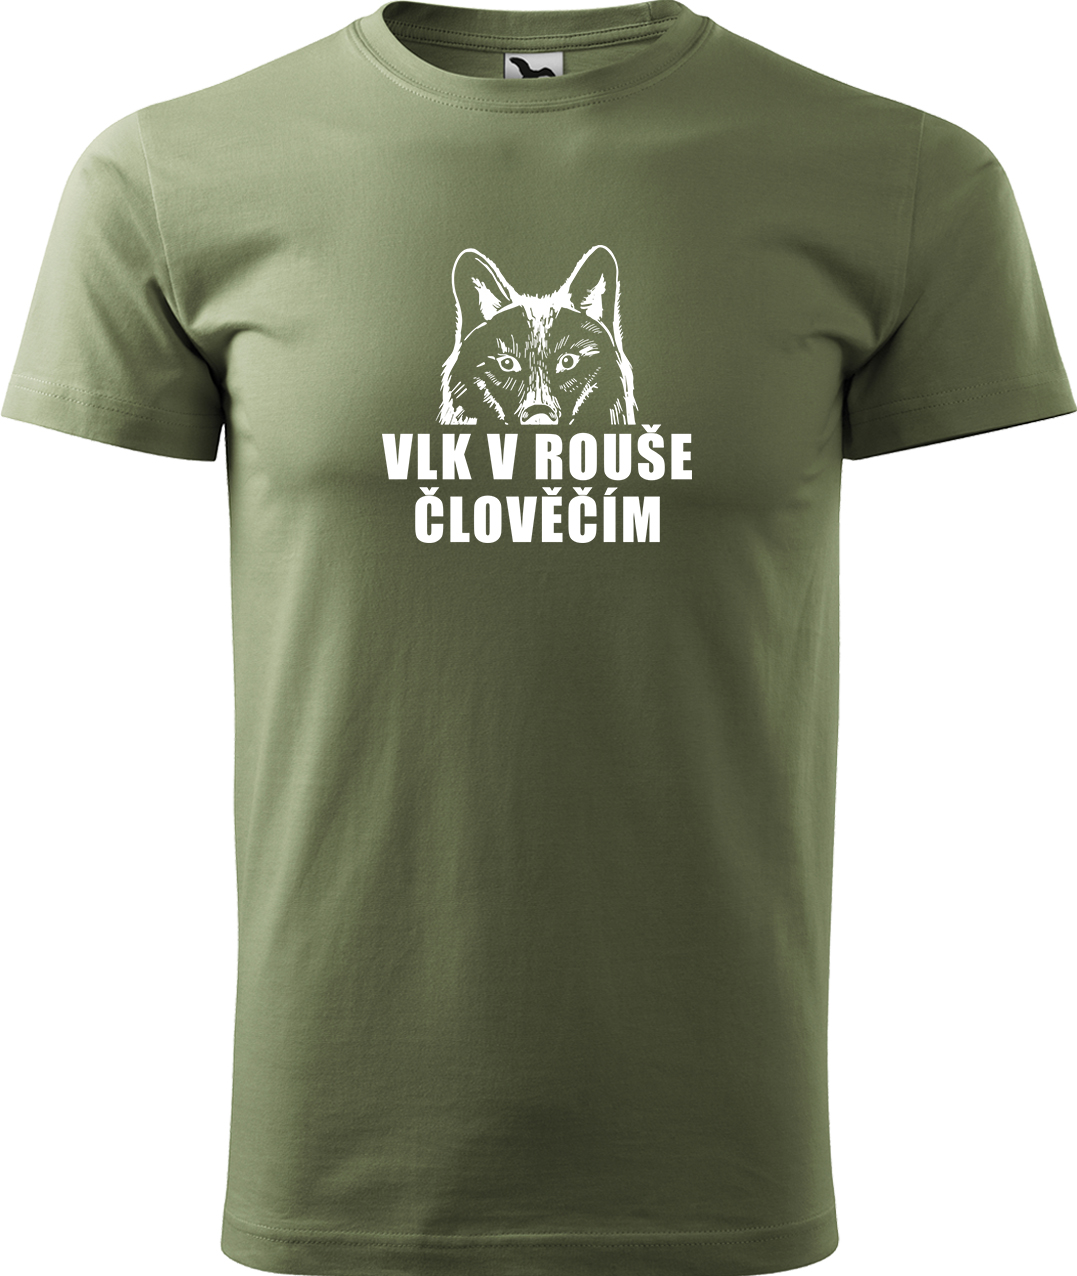 Pánské tričko s vlkem - Vlk v rouše člověčím Velikost: S, Barva: Světlá khaki (28), Střih: pánský